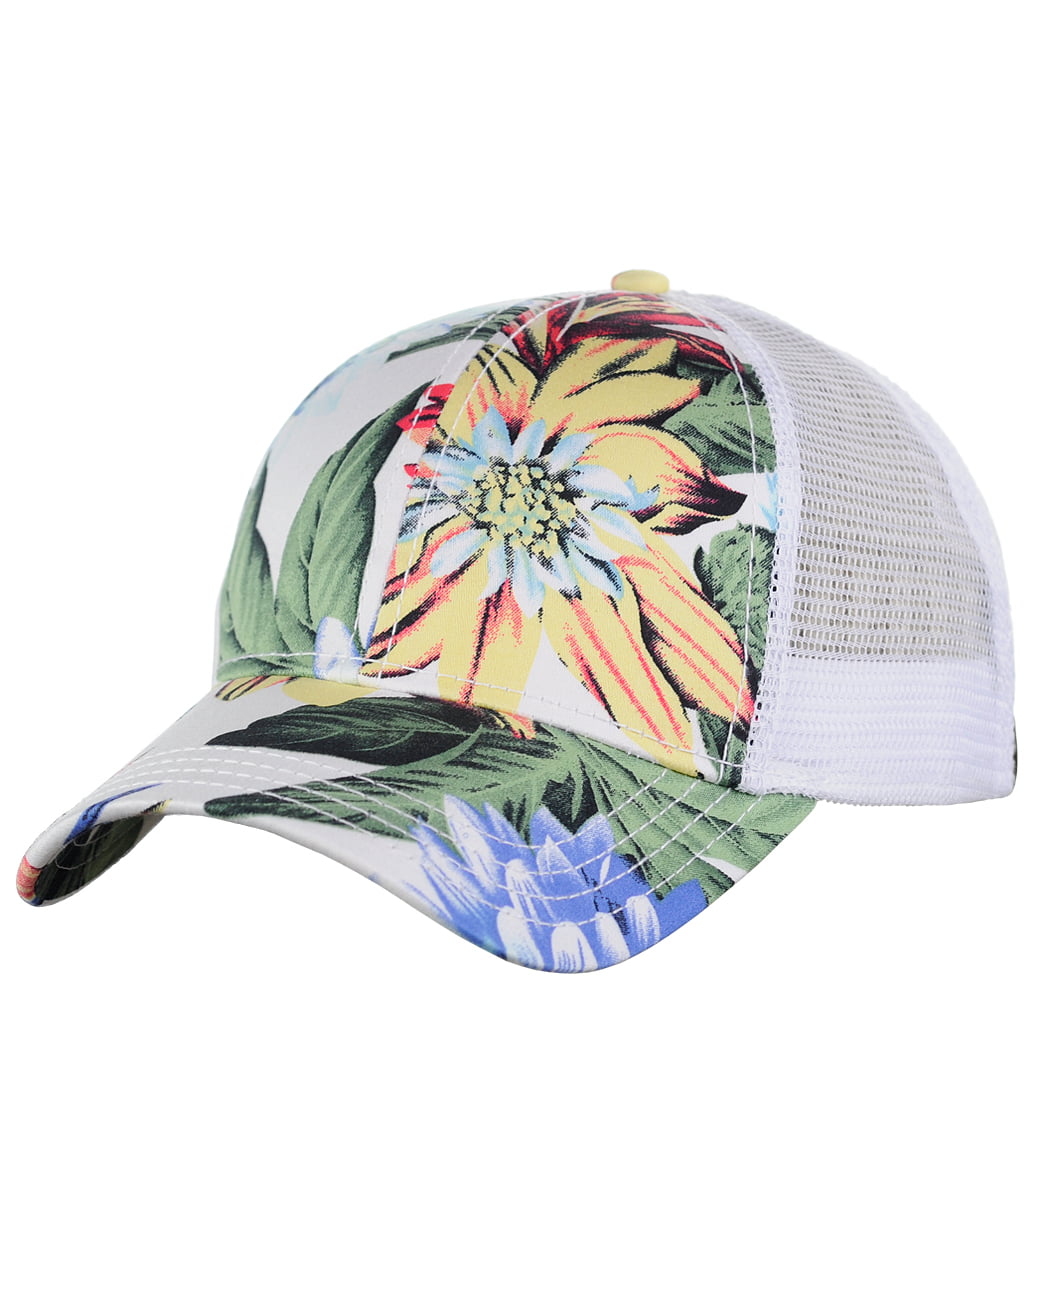 C.C Floral Print Front Panel Mesh Back Adjustable Precurved Baseball Cap Hat 